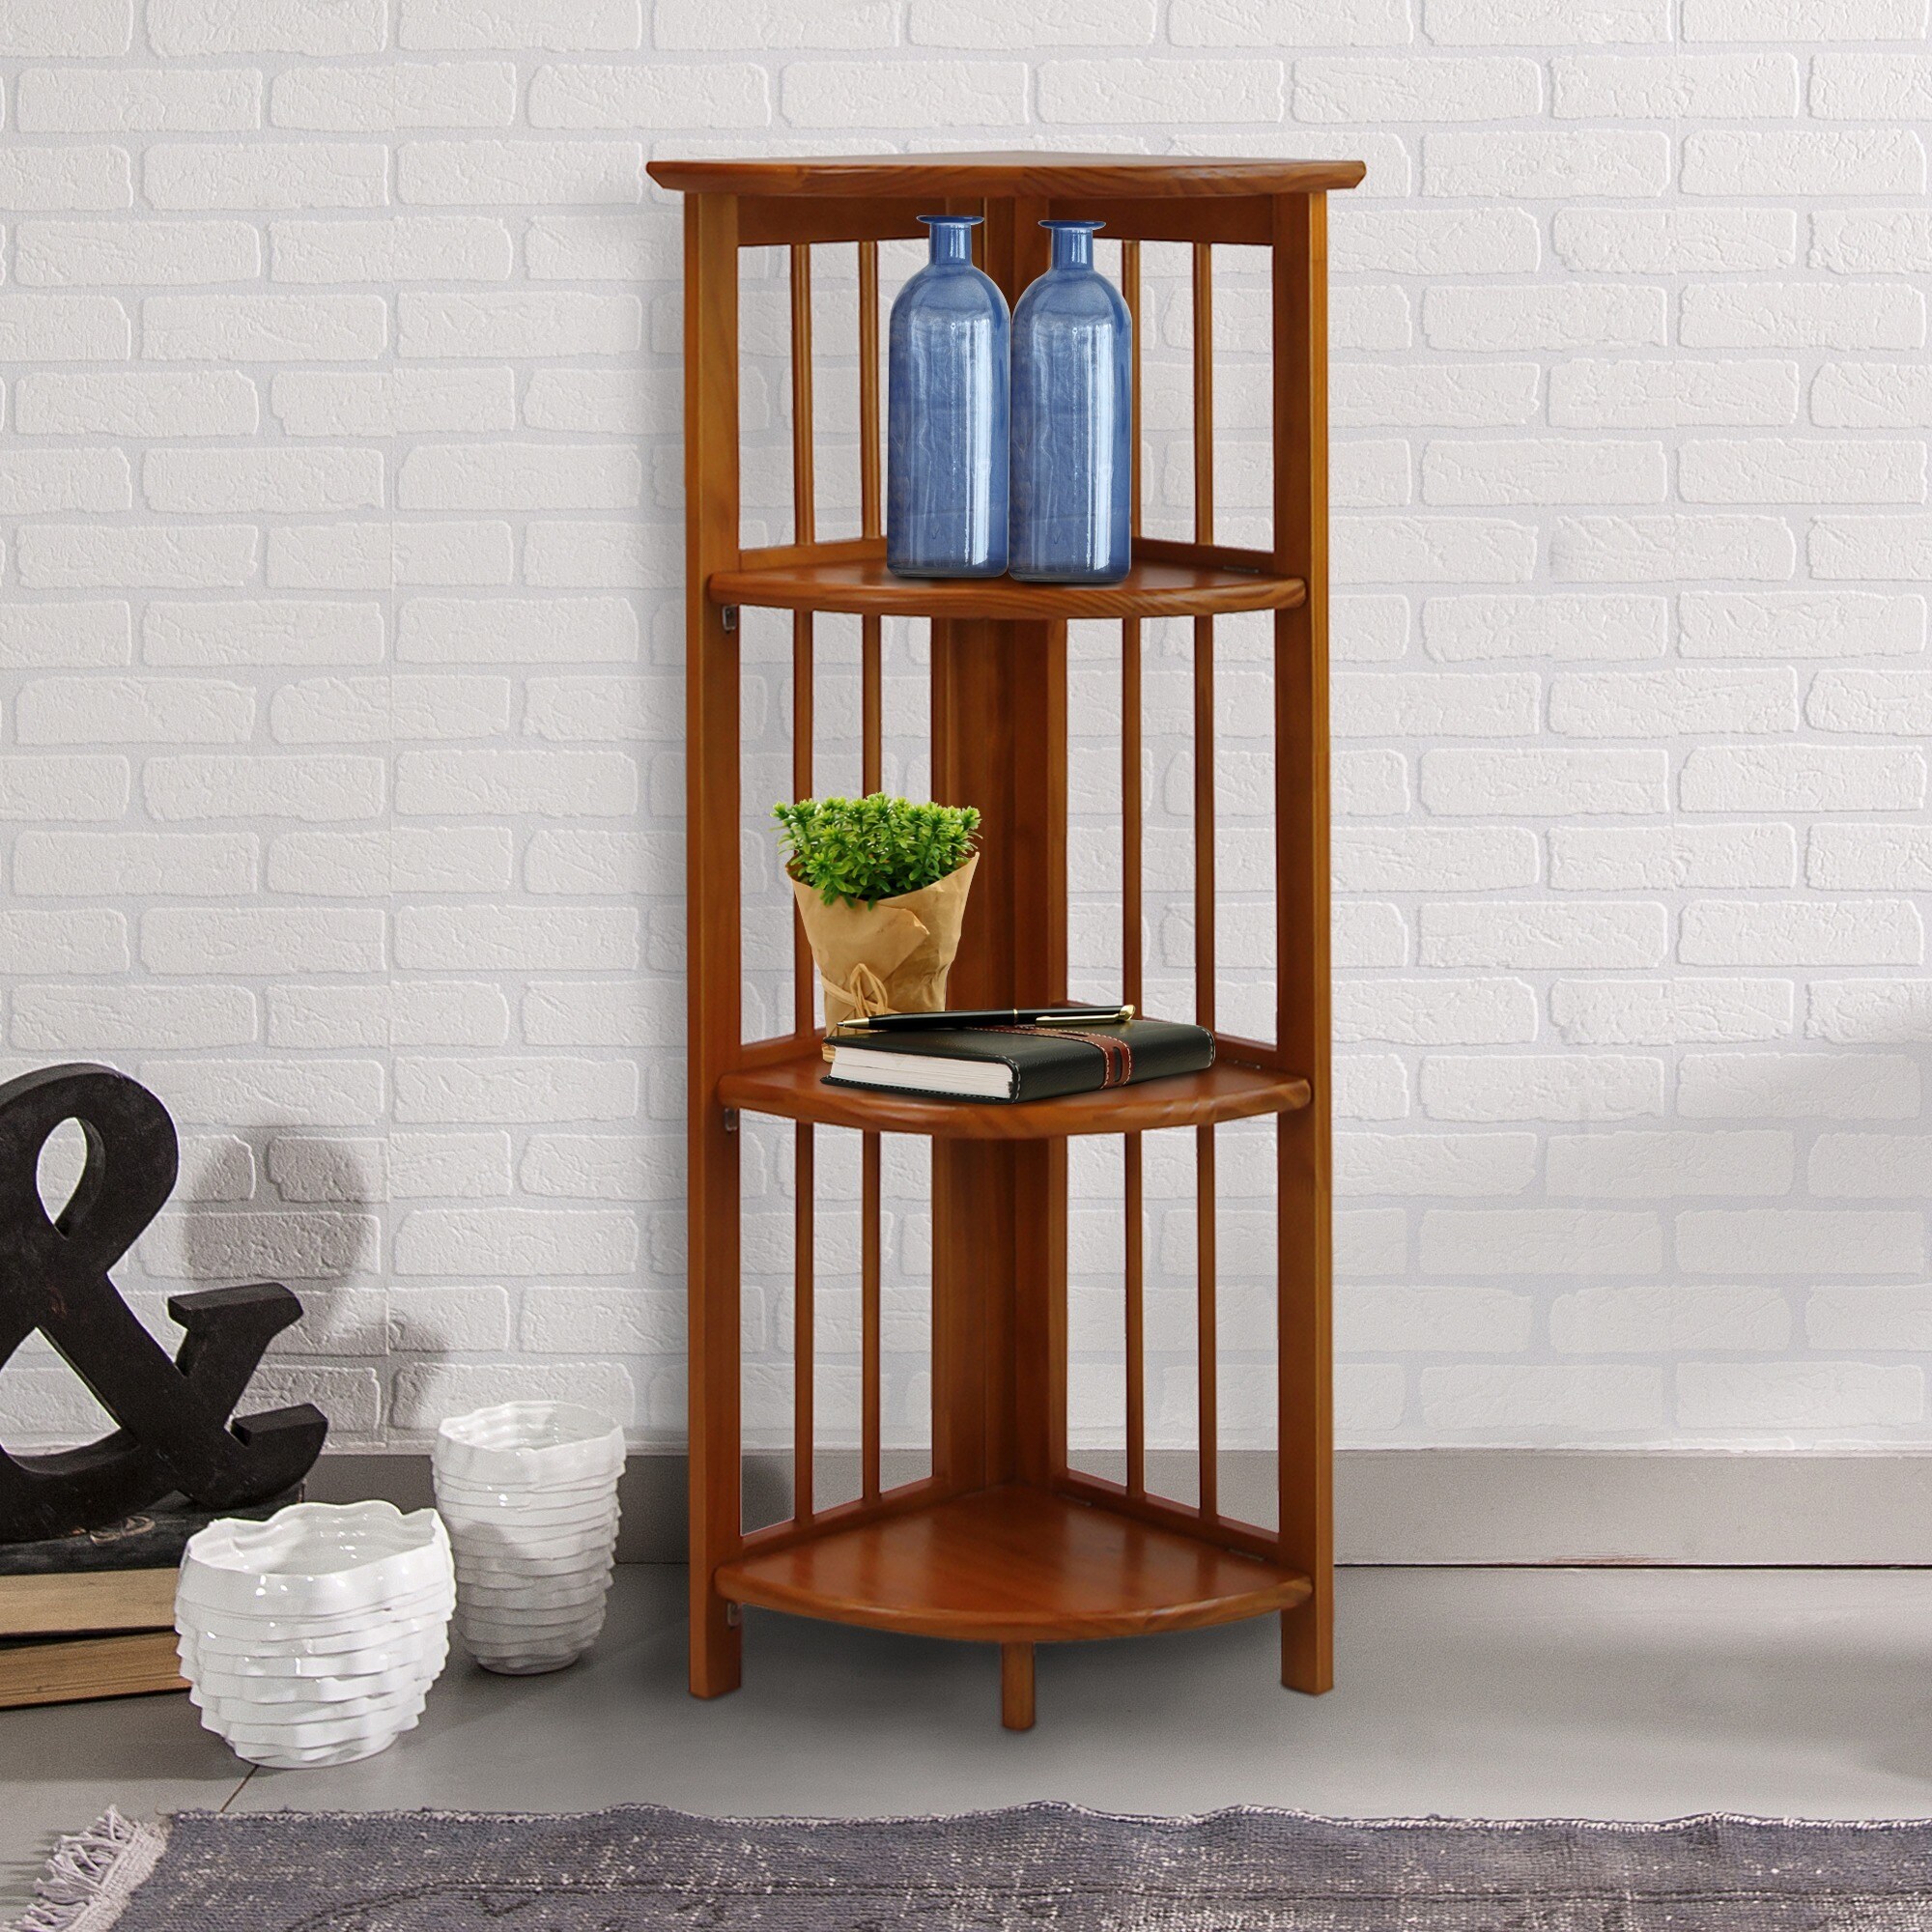 Yu Shan Co USA Ltd Mission 4-shelf Corner Folding Wood Bookcase - image 4 of 5